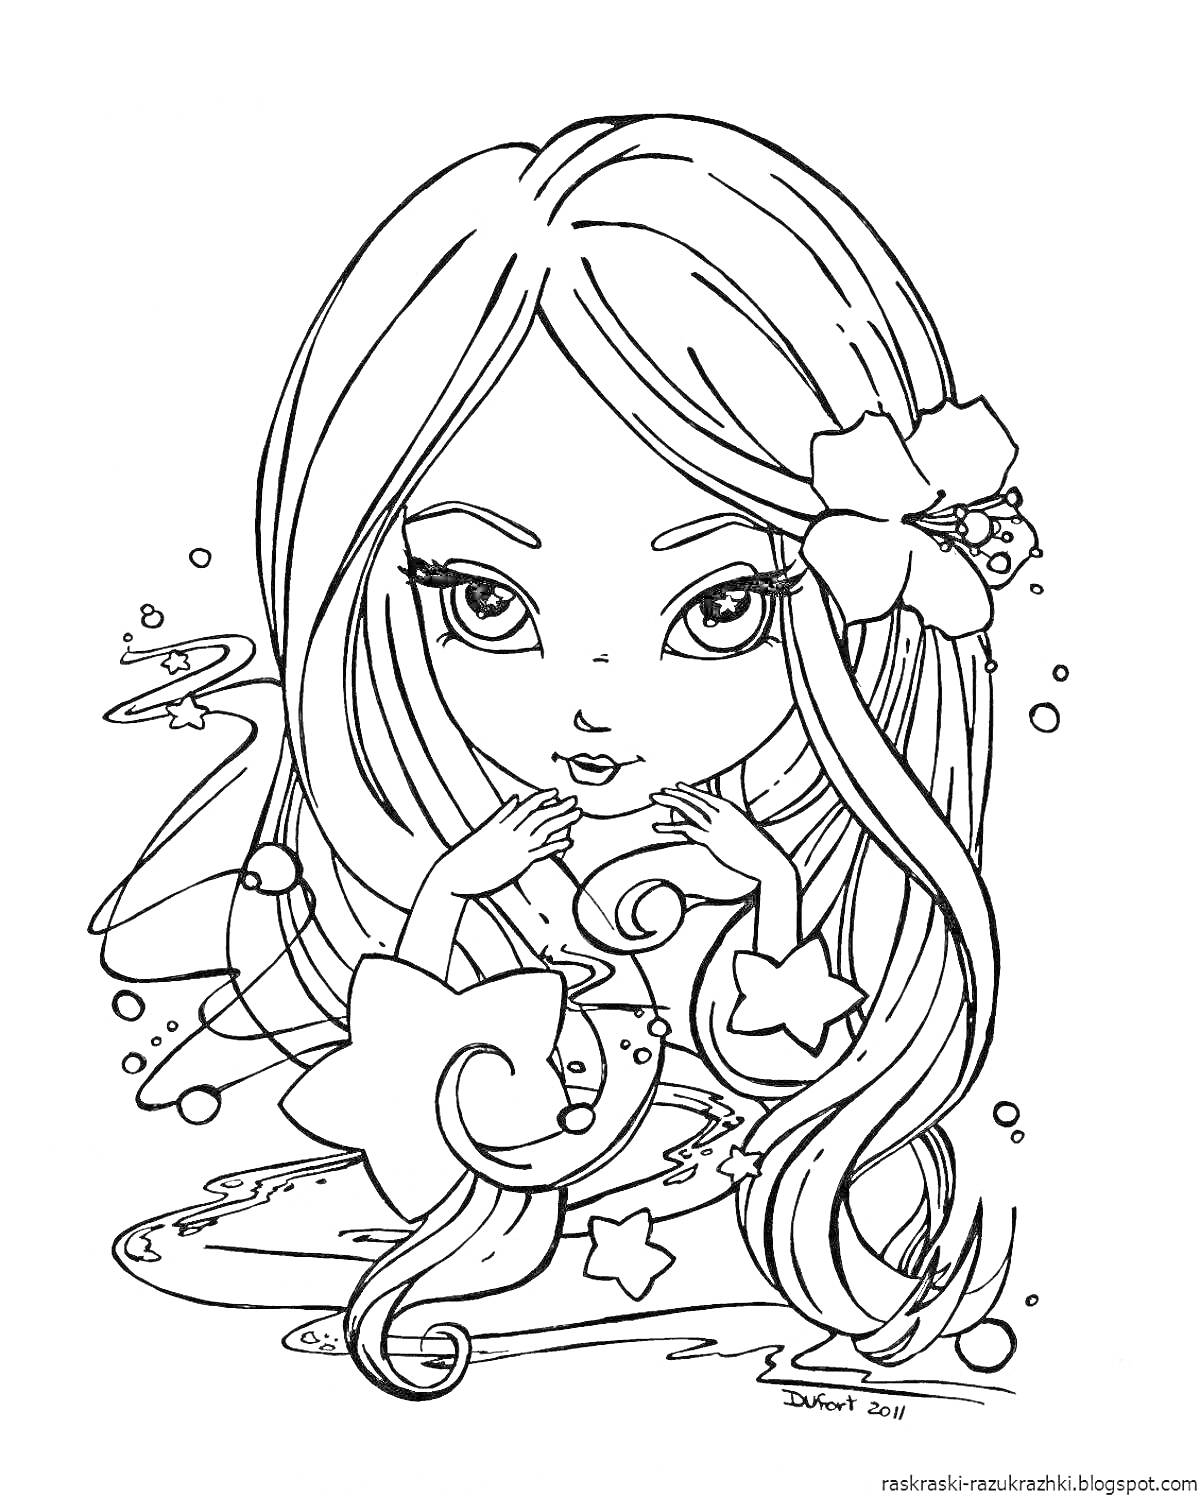 Раскраска Девочка-сирена с длинными волосами и цветком в волосах в окружении морских звезд и пузырьков